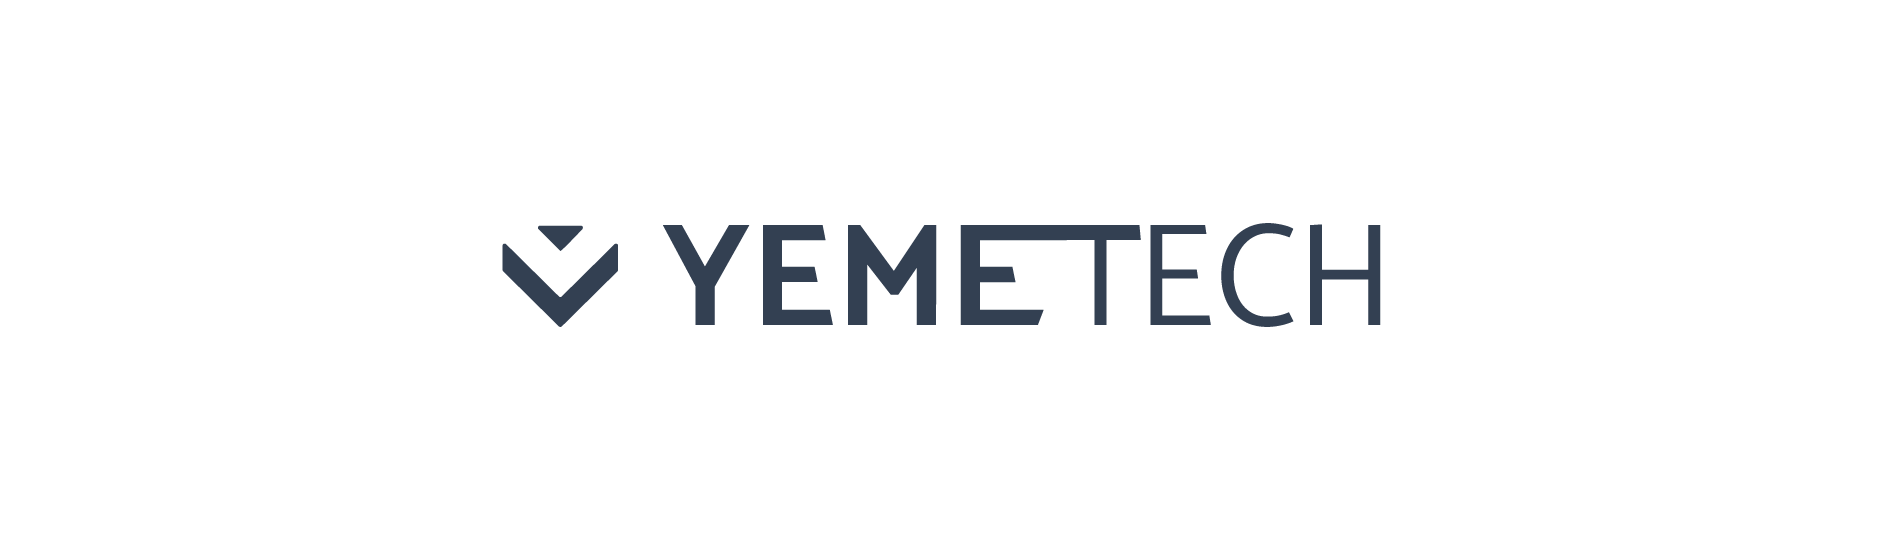 Yeme Tech Limited